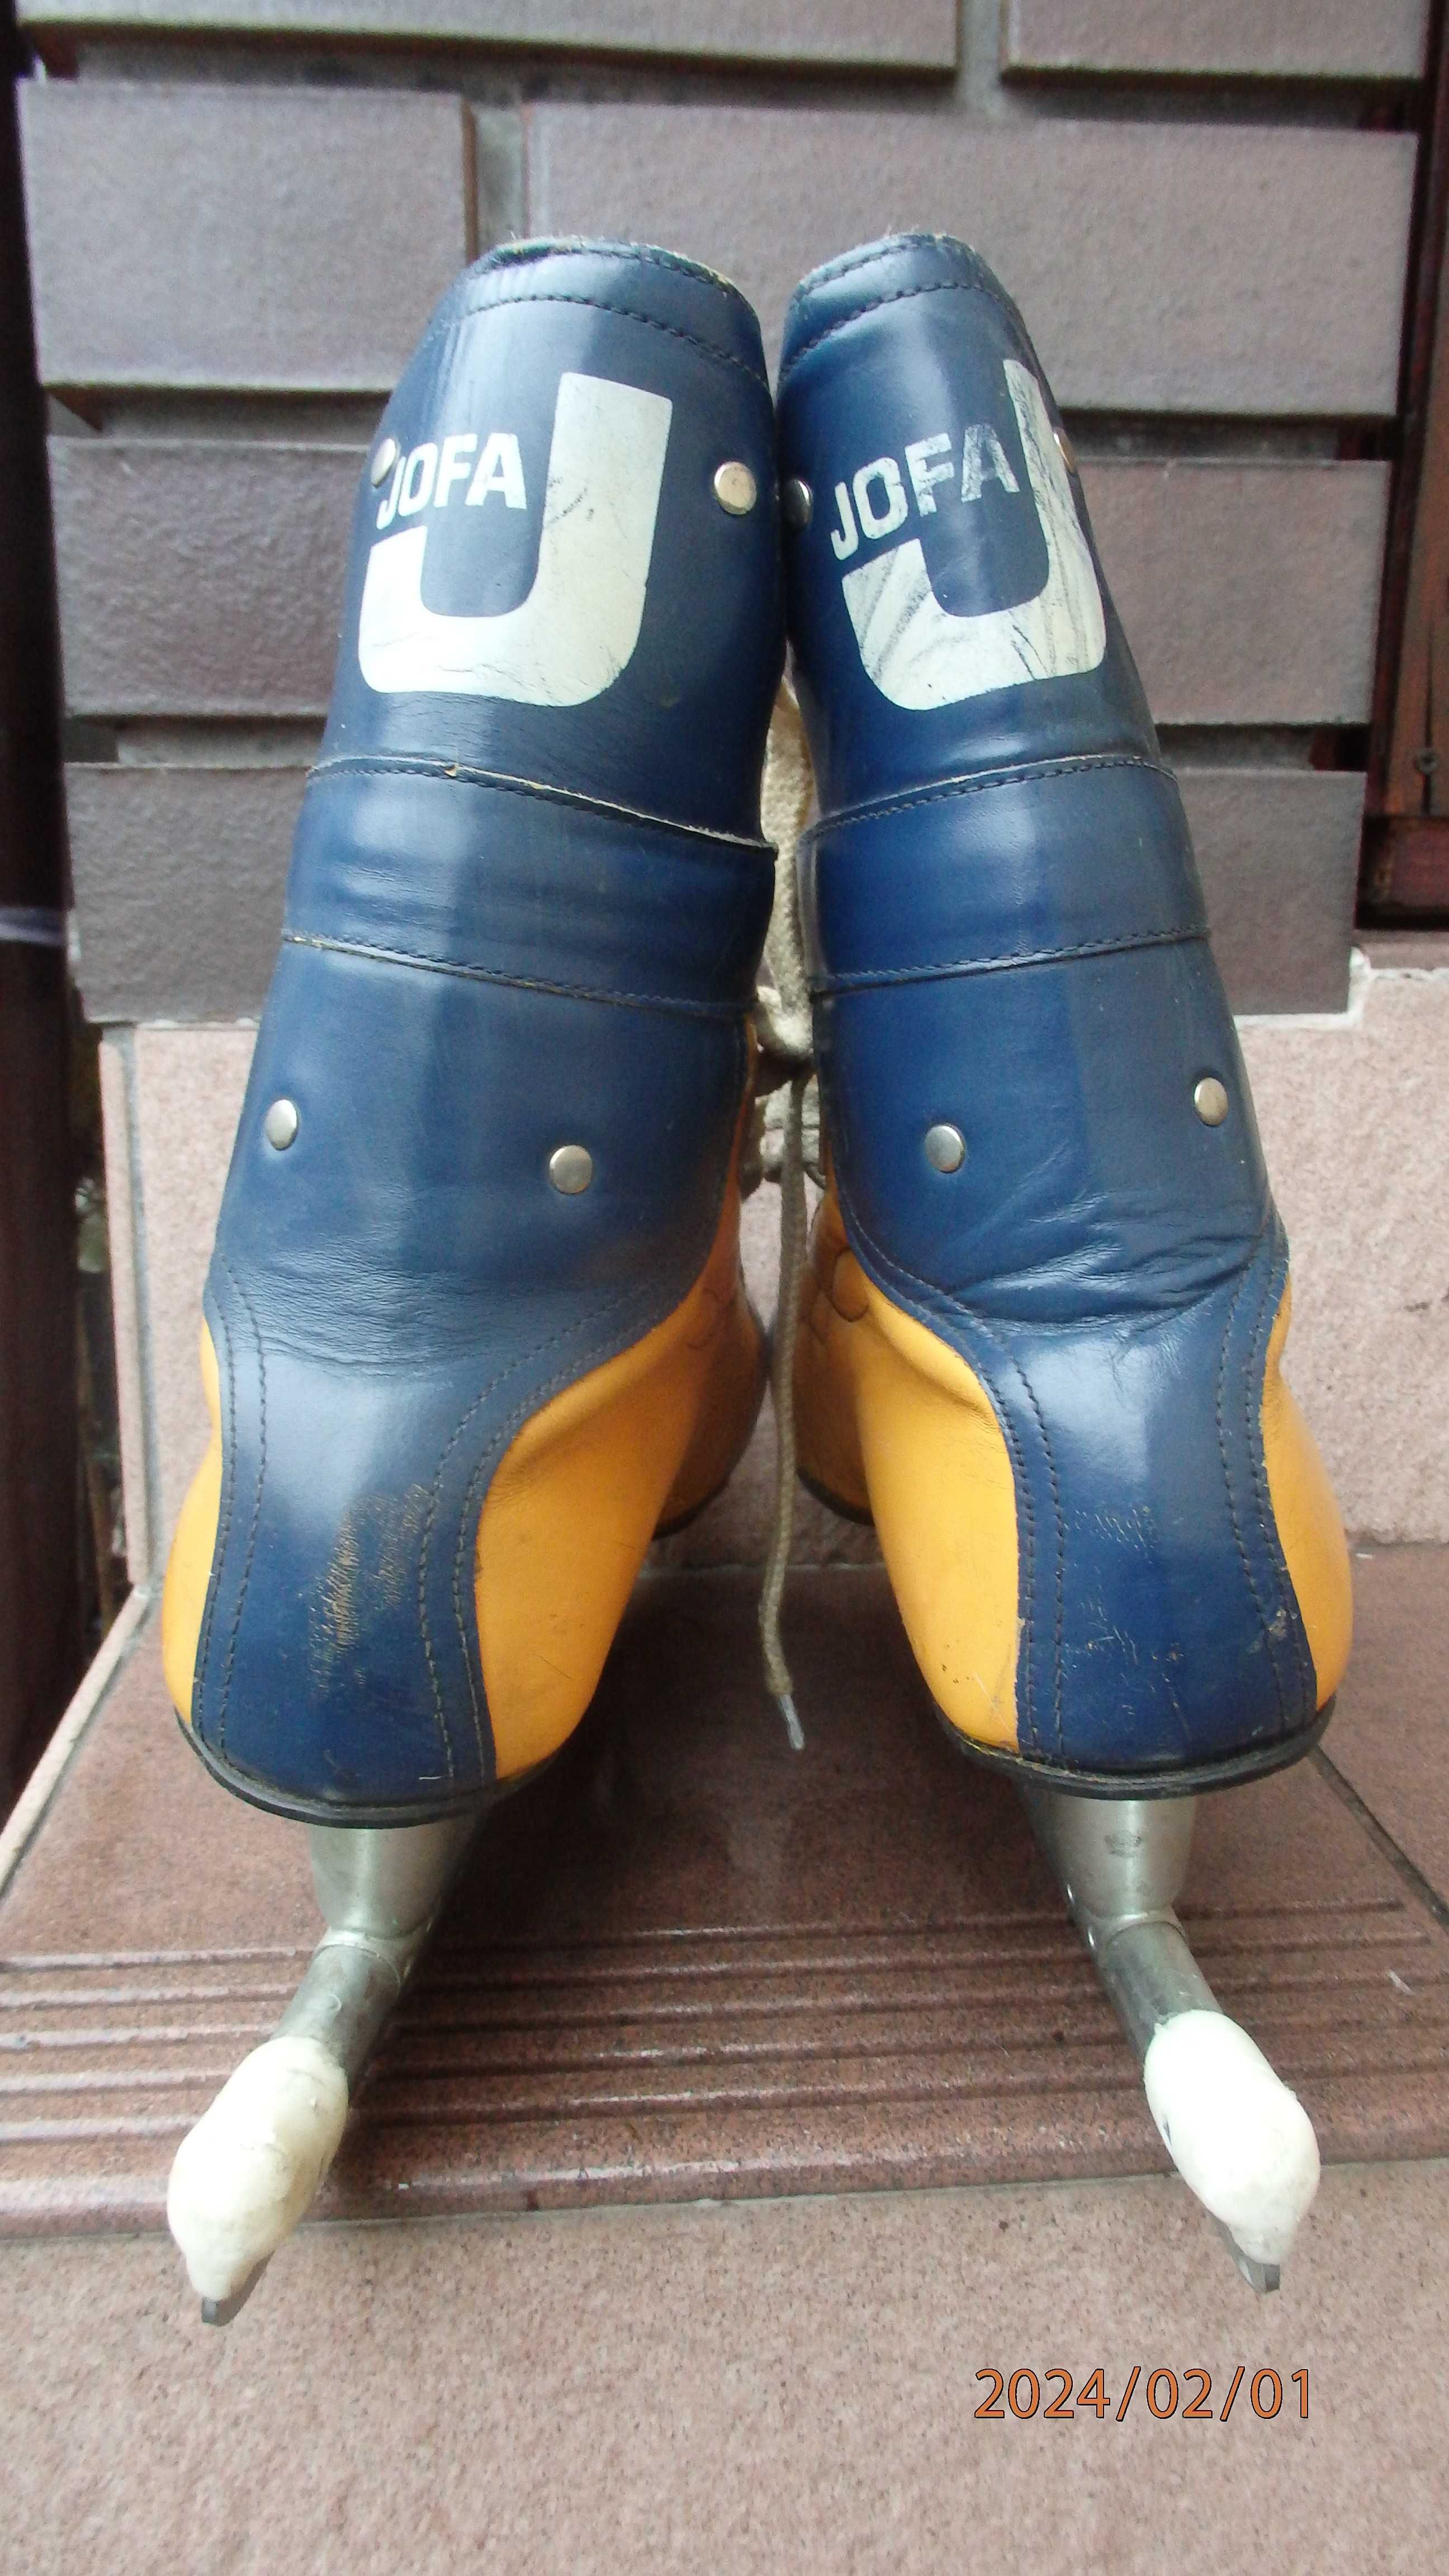 Buty zimowe męskie z łyżwami firmy Jofa (Szwecja) rozmiar 42.